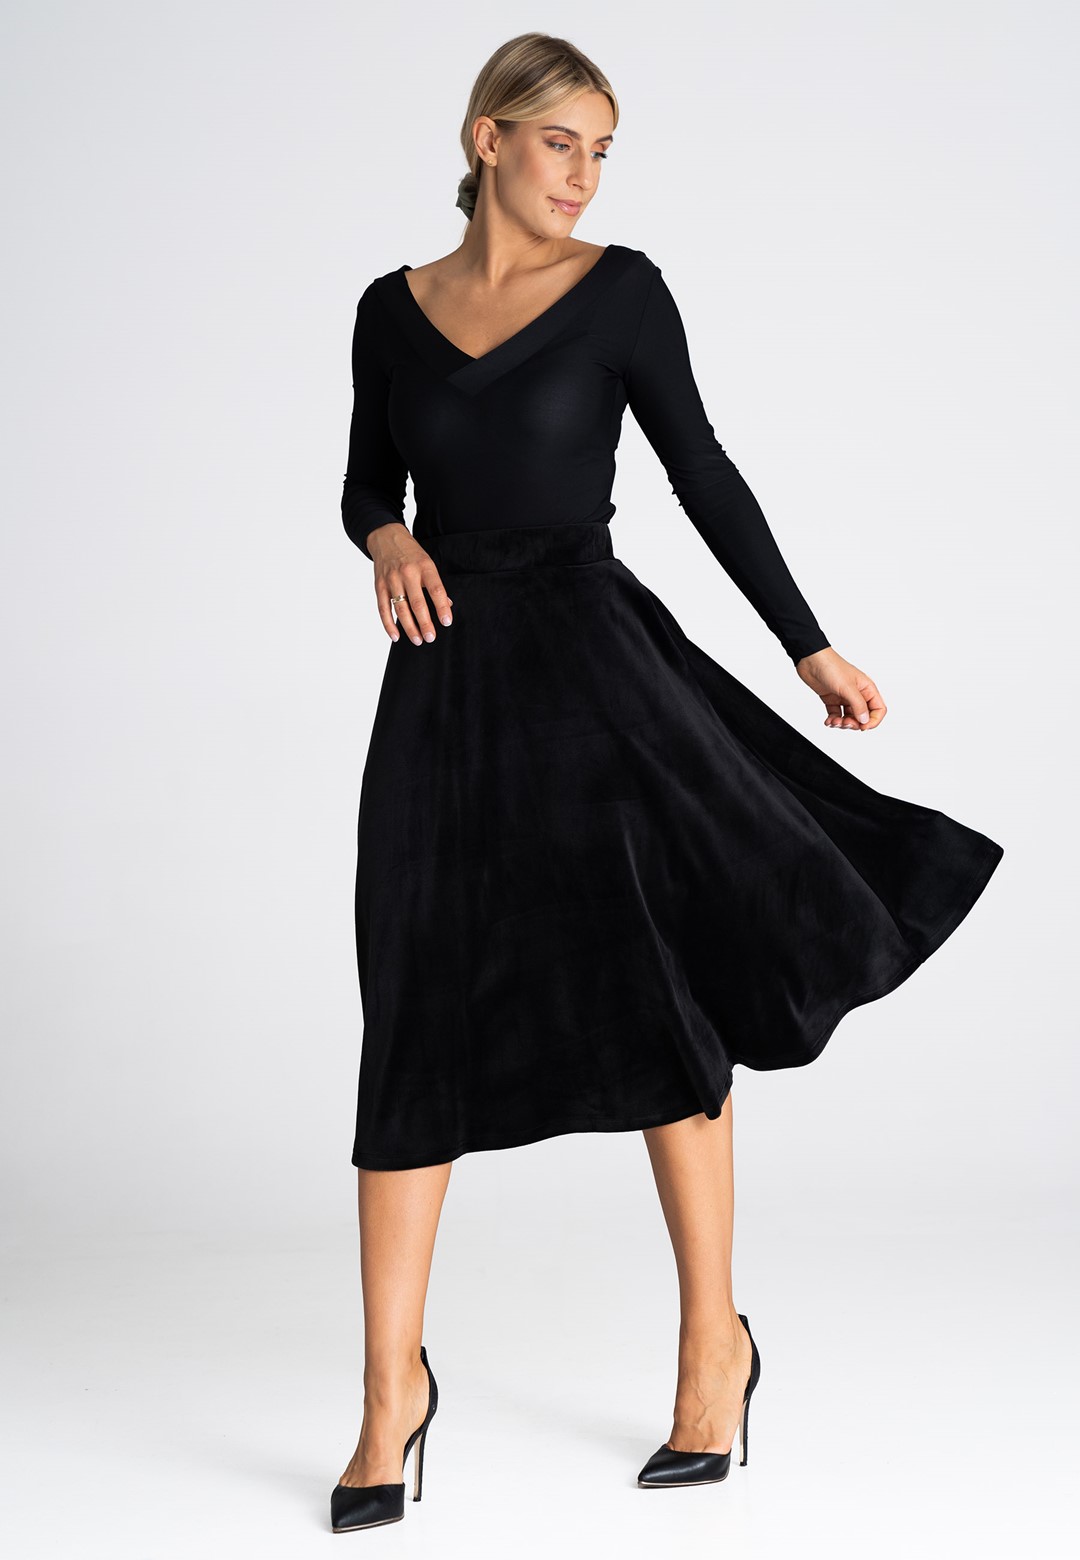 Černá midi sukně s kapsami M964 black Velikost: L/XL